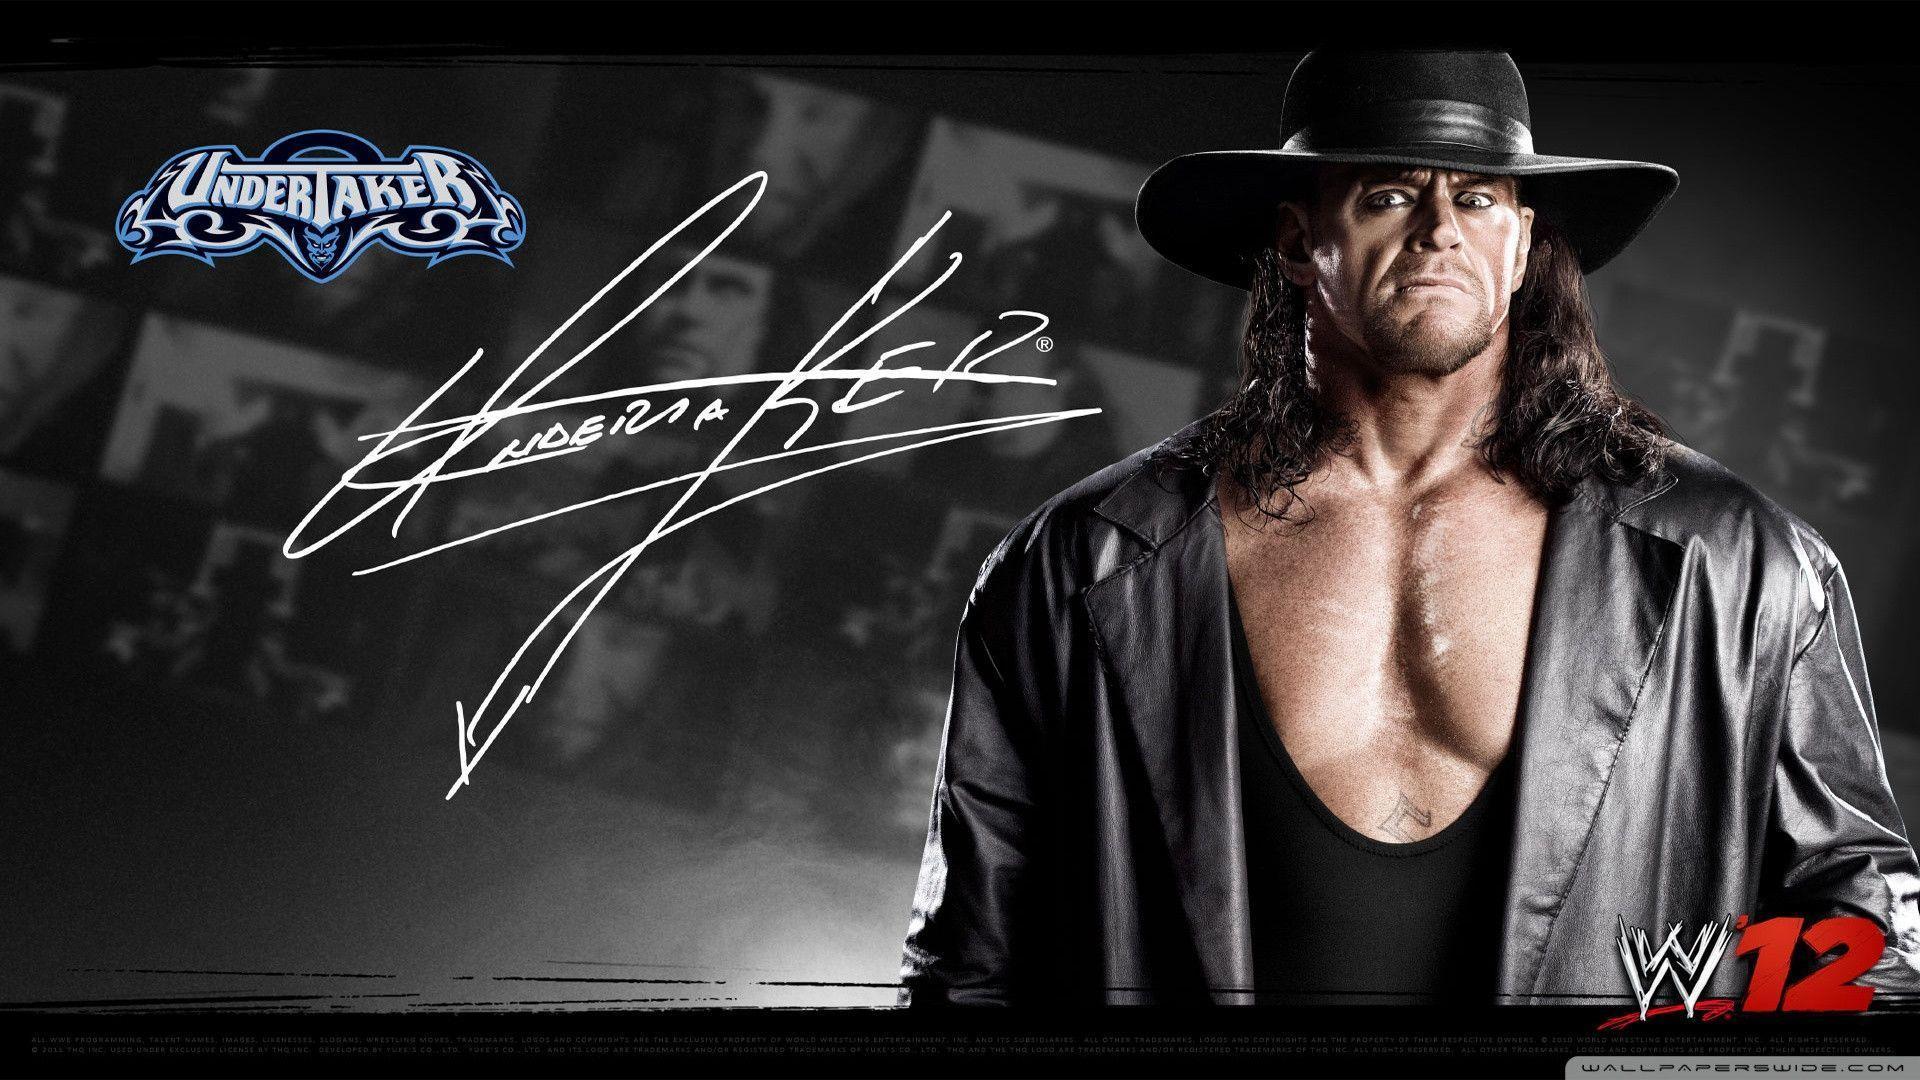 WWE HD Wallpaper. Sky HD Wallpaper